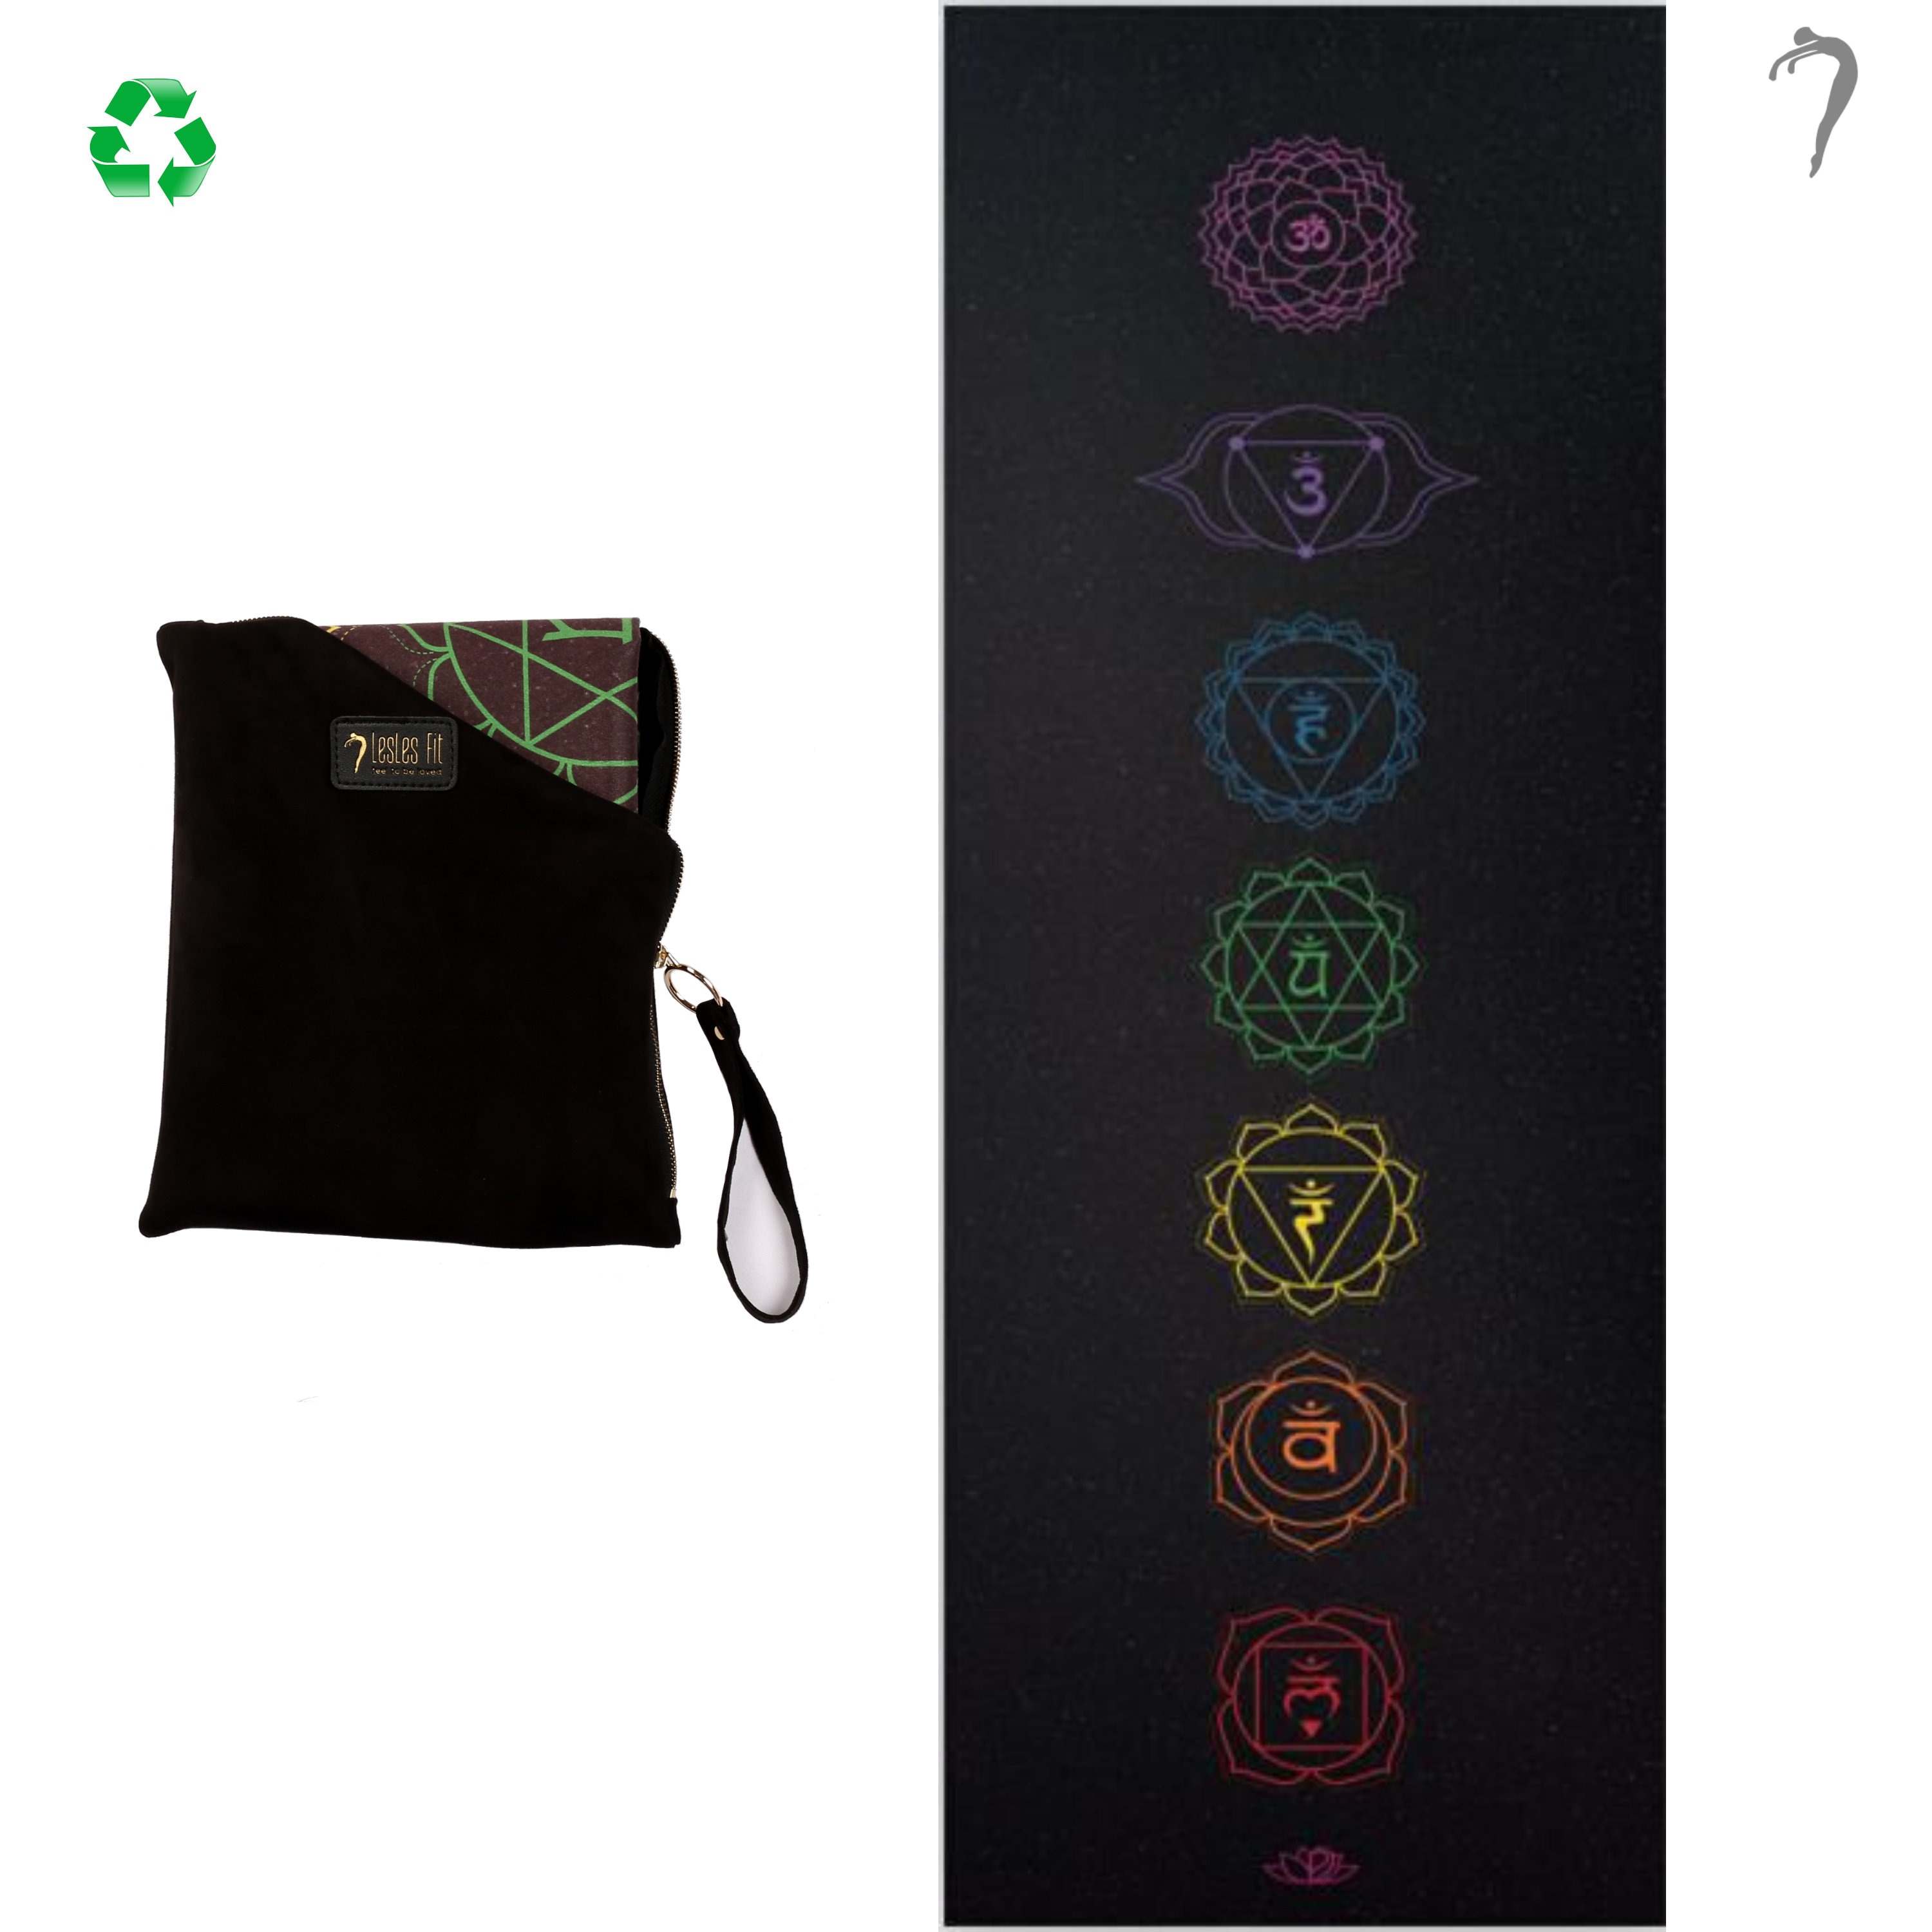 Super Thin Yoga & Meditation Mat, Elegant Carry Bag for Indoor or